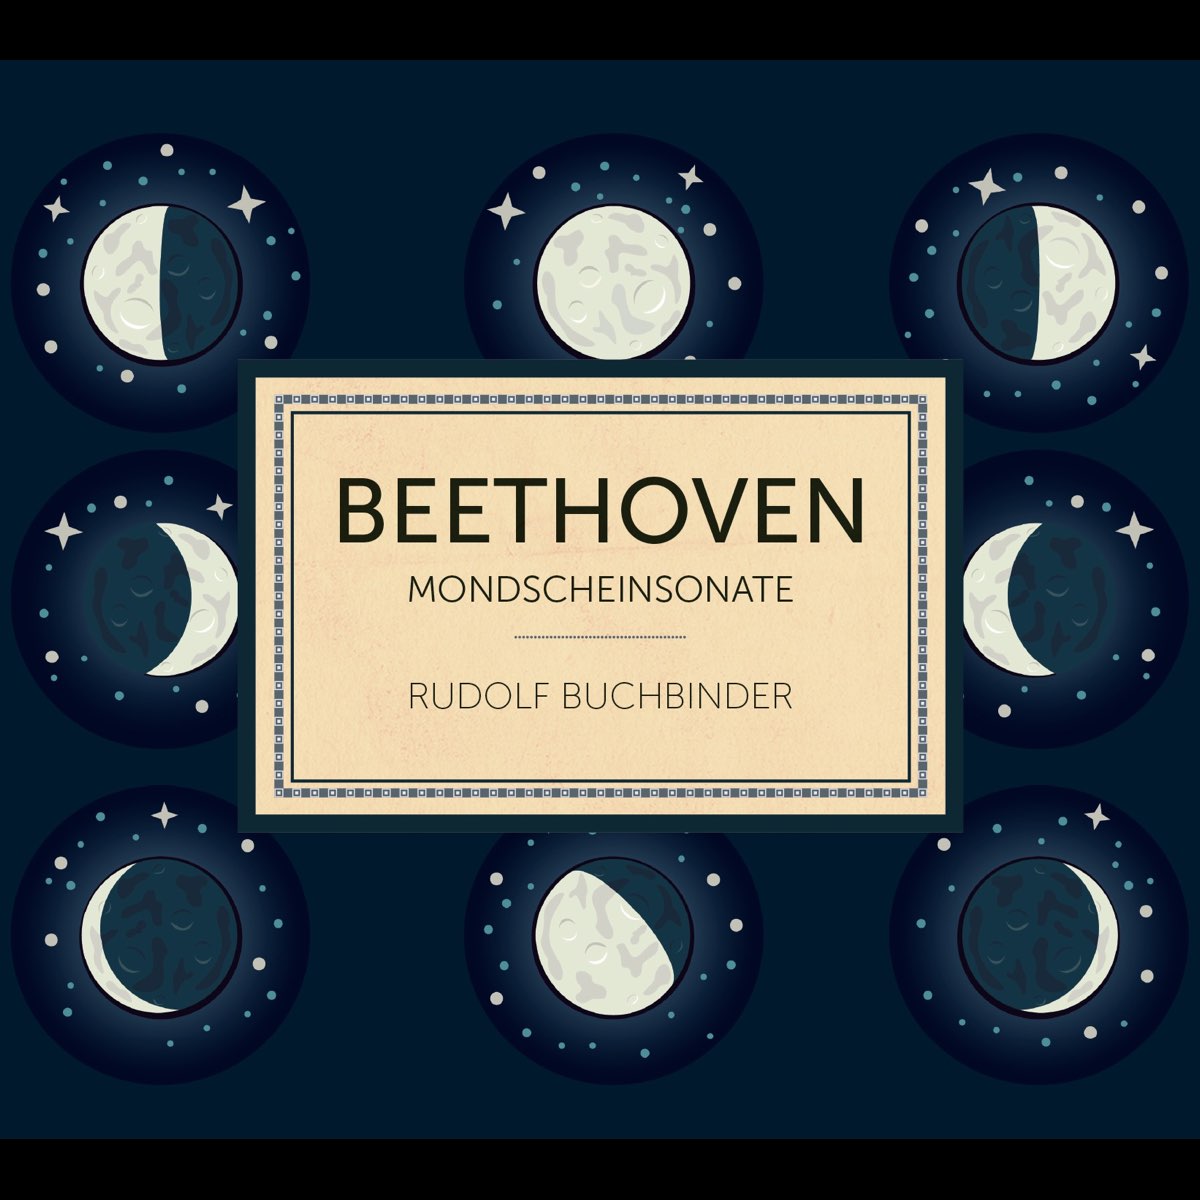 Beethoven: Mondscheinsonate“ von Rudolf Buchbinder bei Apple Music